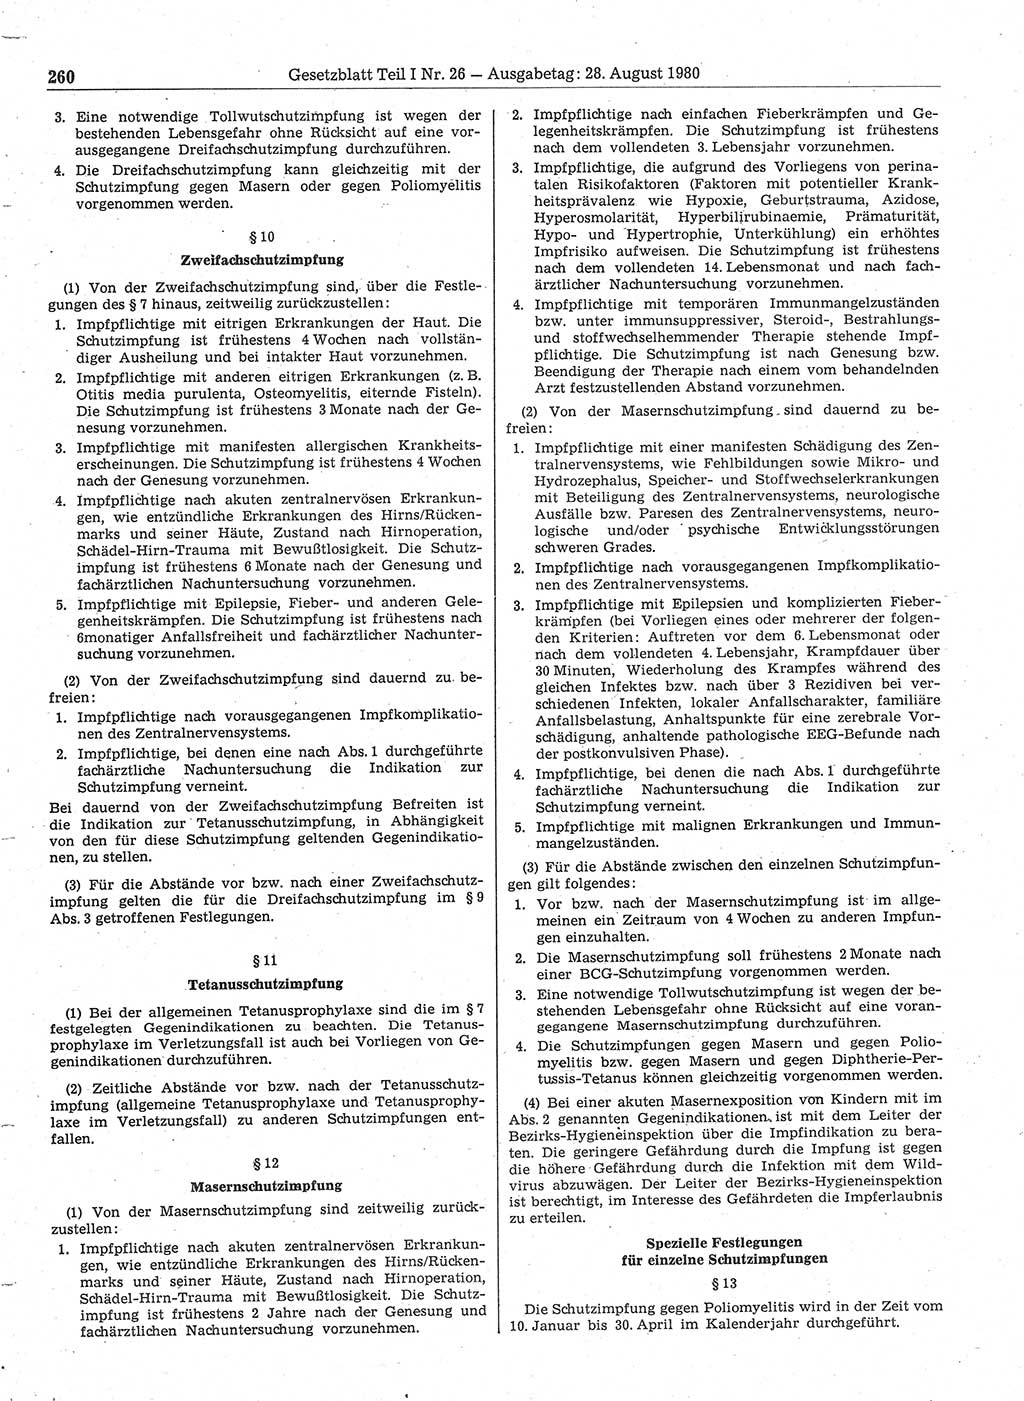 Gesetzblatt (GBl.) der Deutschen Demokratischen Republik (DDR) Teil Ⅰ 1980, Seite 260 (GBl. DDR Ⅰ 1980, S. 260)